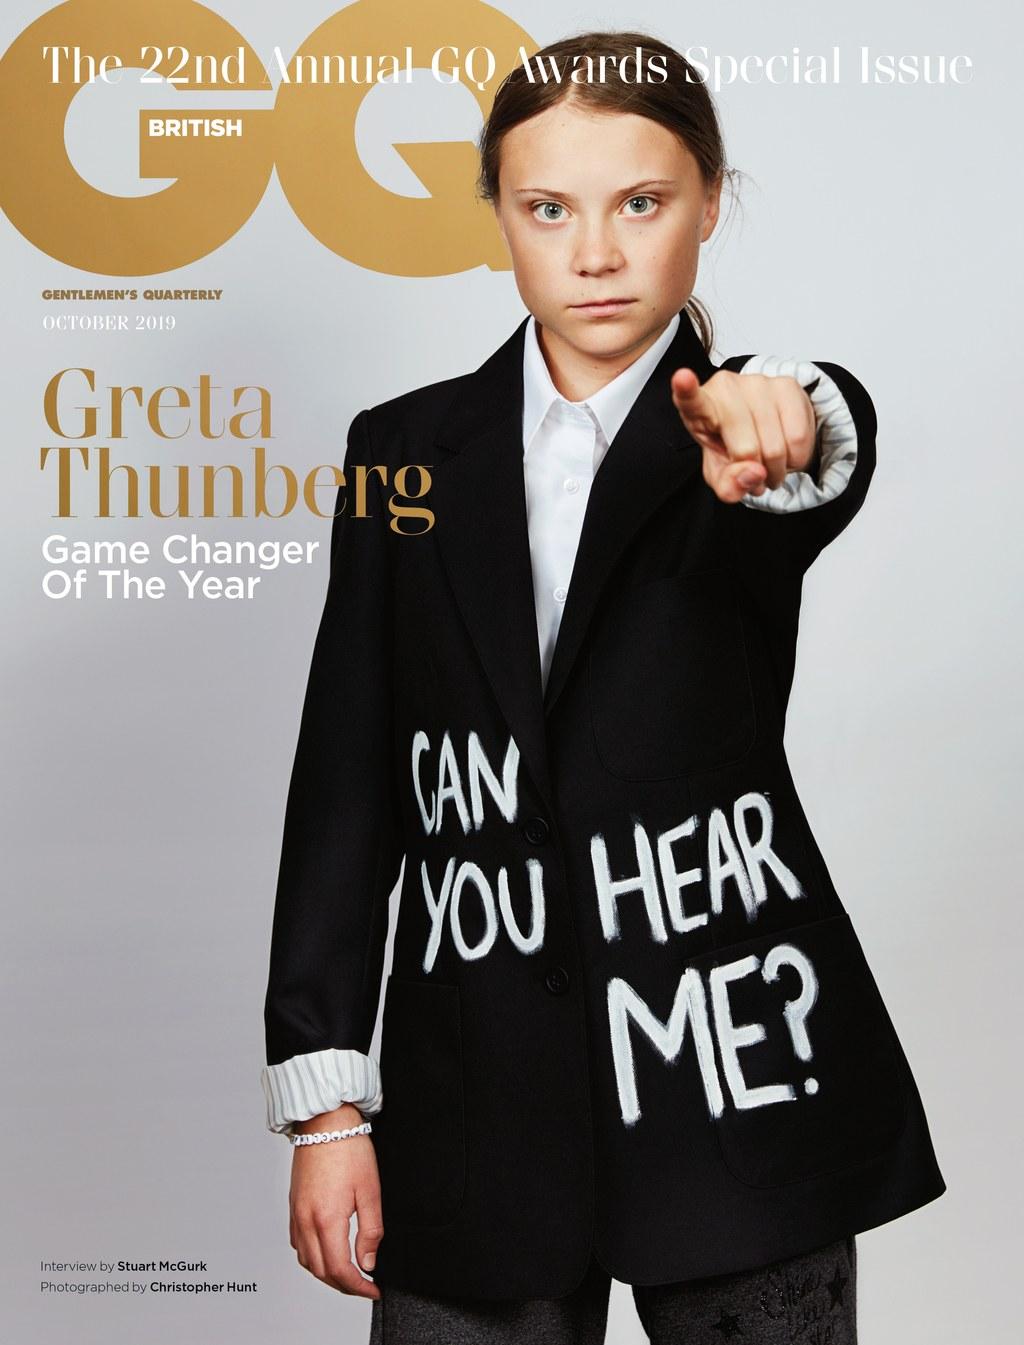 Det är det brittiska specialnumret för oktober månad som tillägnas Greta Thunberg.